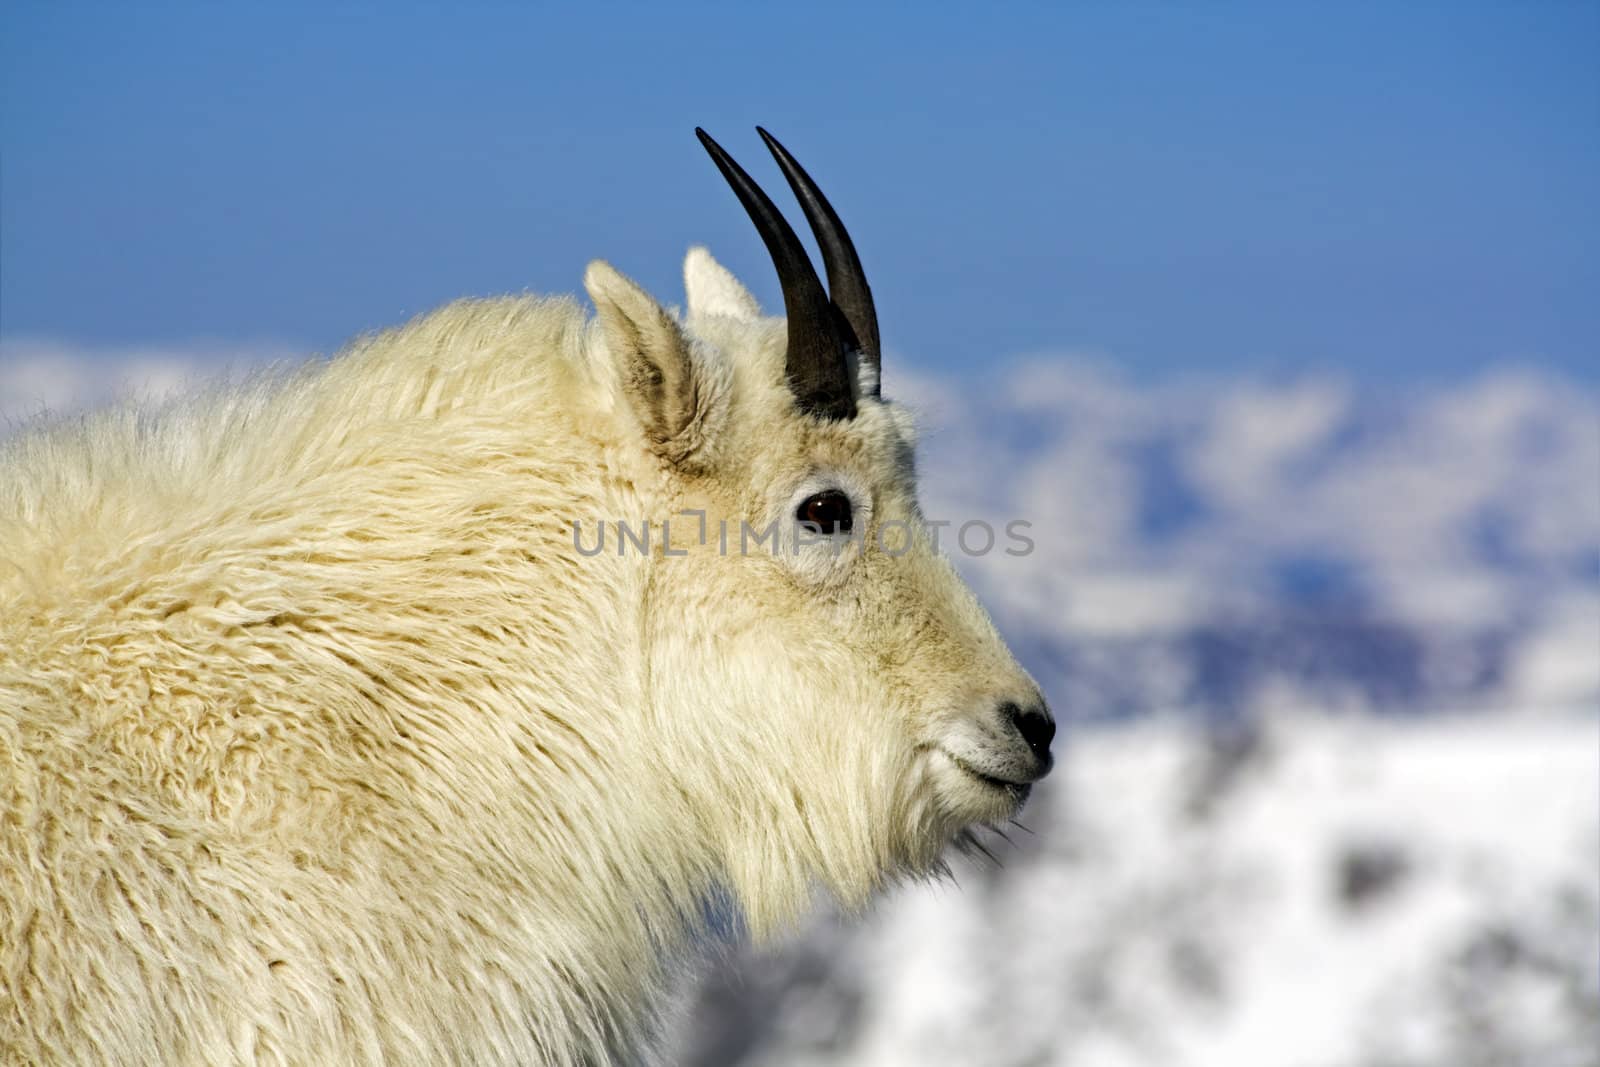 Mountain Goat seen in Colorado.